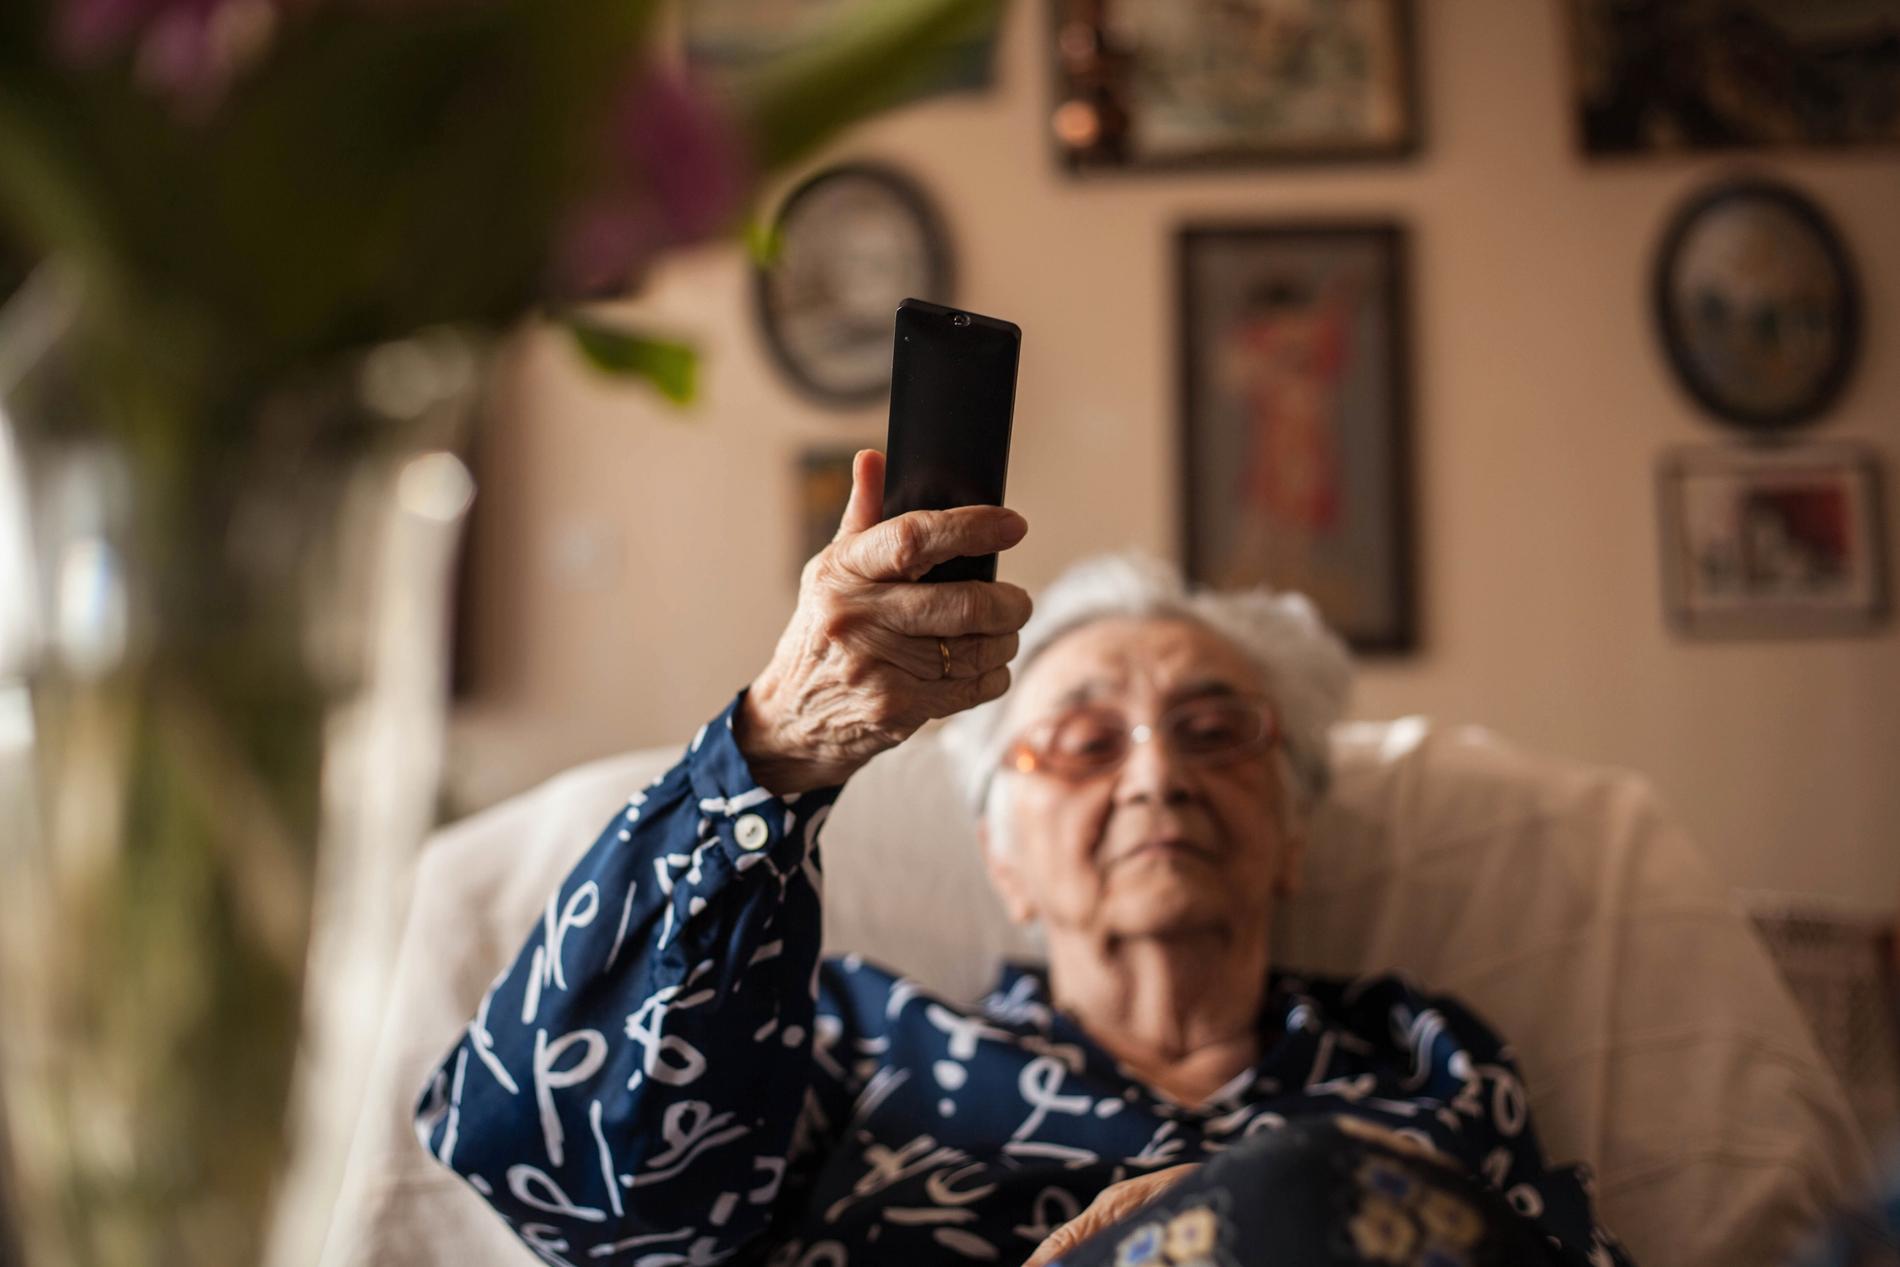 Den 8 september ska 500 000 av 1,6 miljoner hushåll ställa om från analogt till digital-tv. För många äldre uppstår tekniska svårigheter, speciellt under pandemin när släktingar måste hålla sig borta.